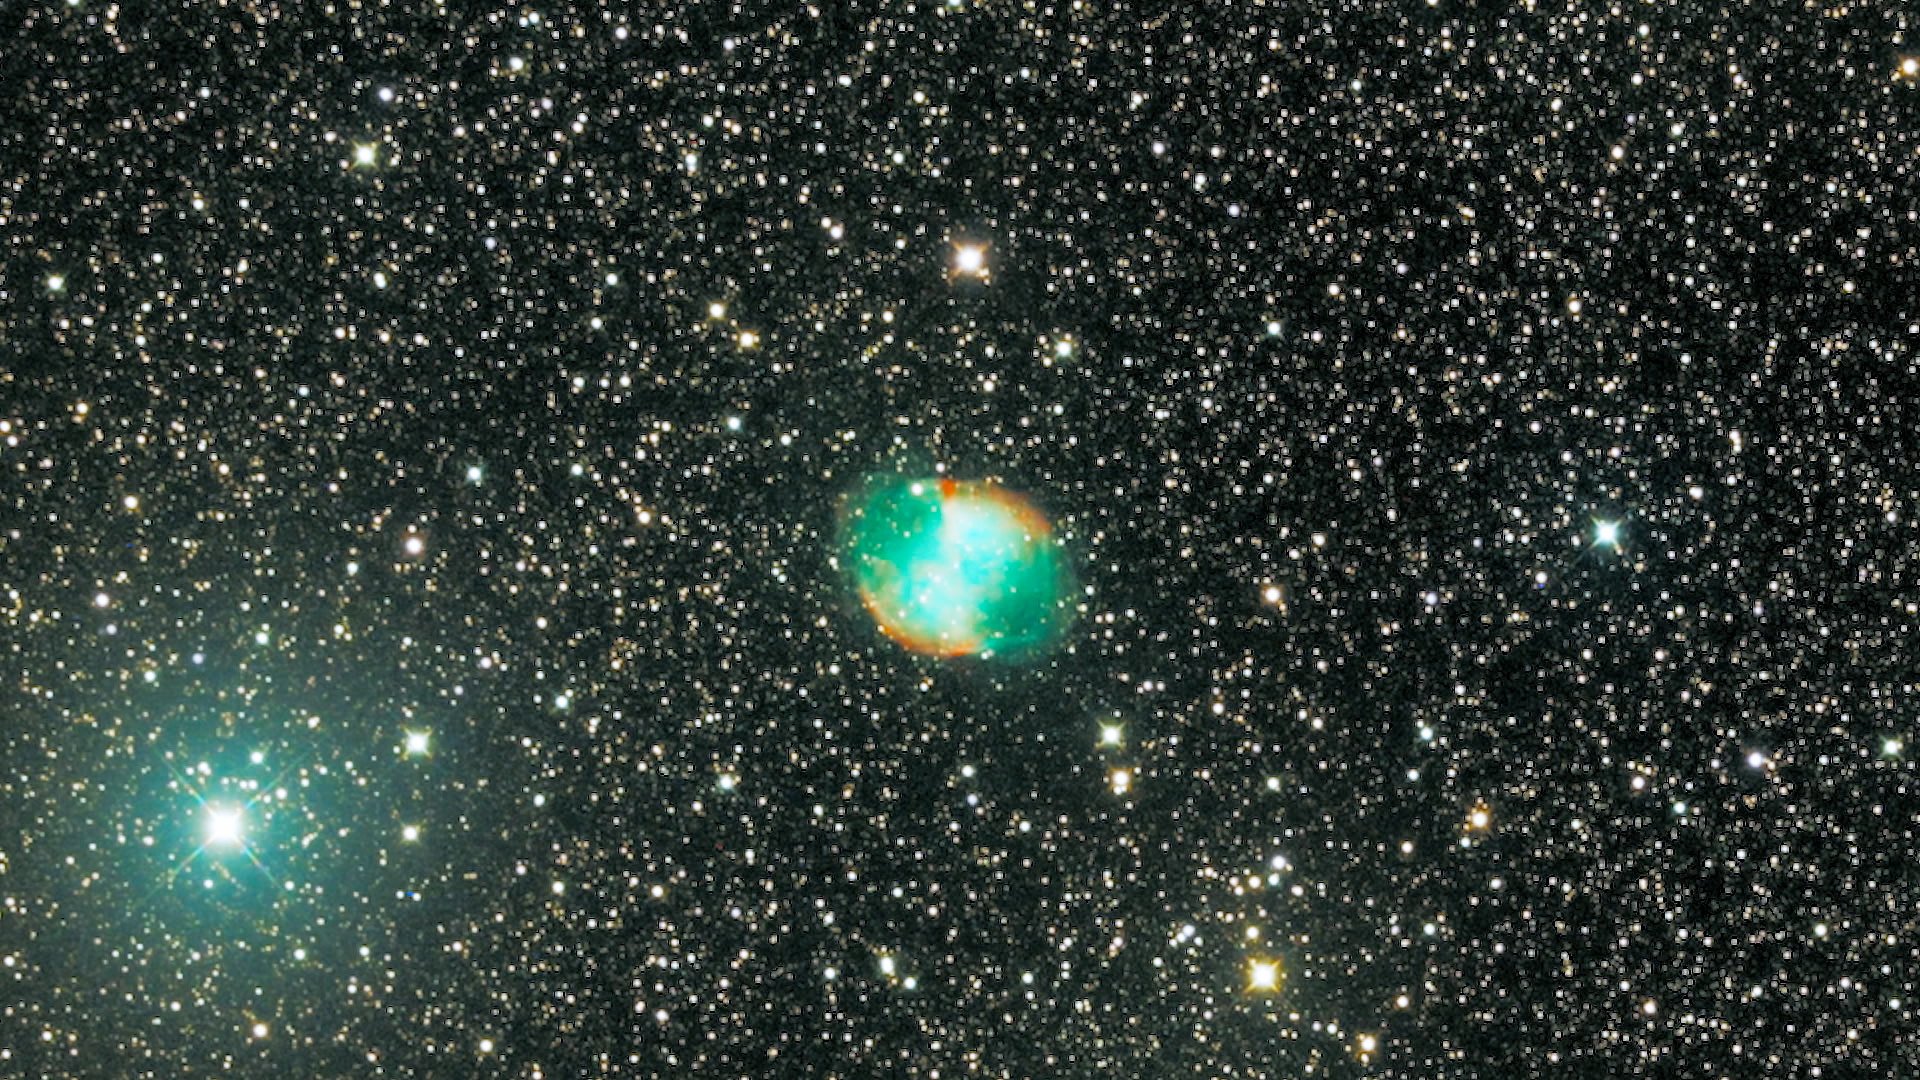 Nébuleuse de l'Haltère (M27) : Nébuleuse planétaire, créée par l’éjection des couches externes d’une petite étoile. Elle est située dans la constellation du Petit Renard à une distance d’environ 1200 années-lumière. (photo: Stéphane Simard)